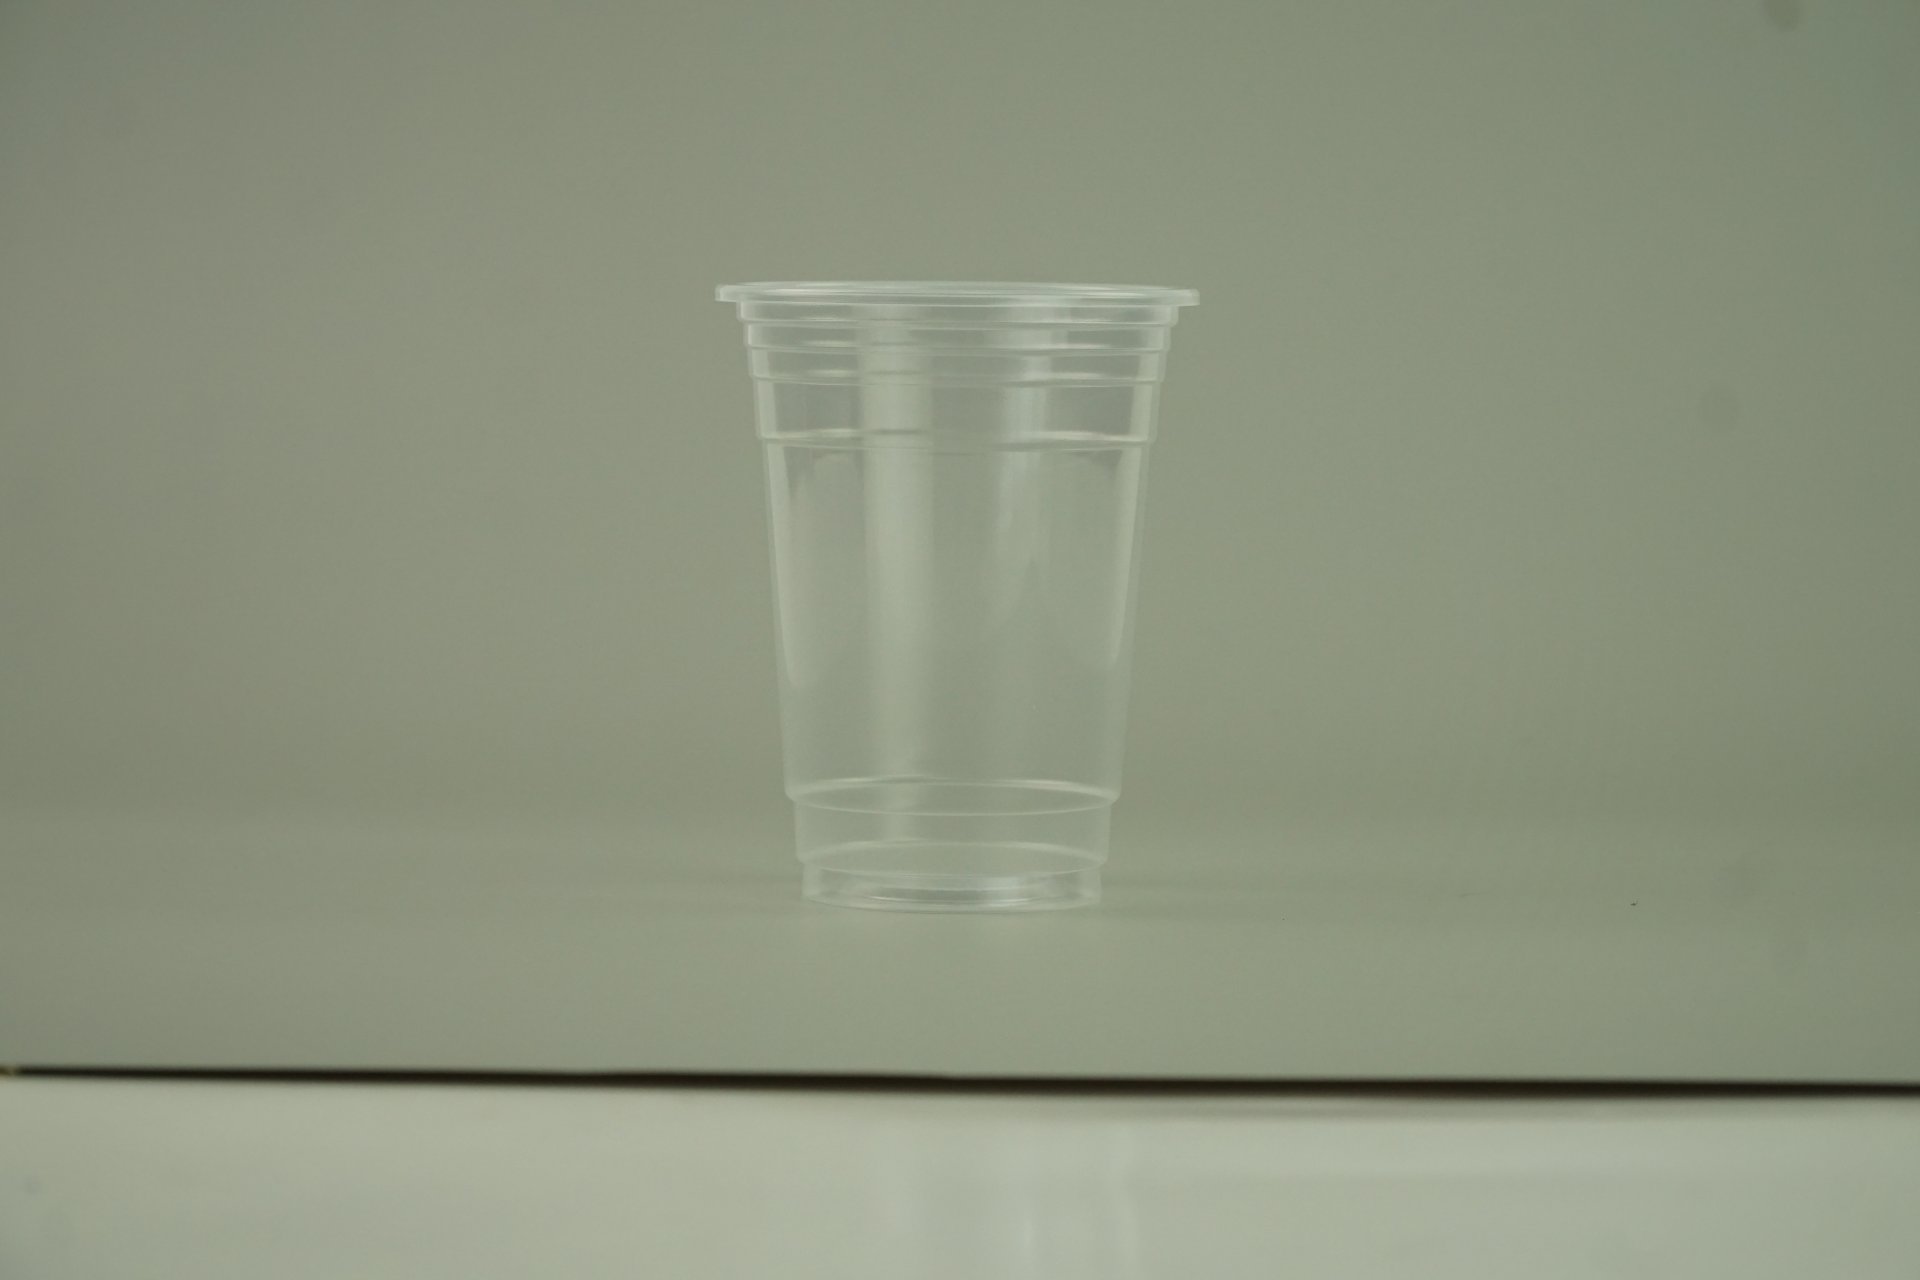 แก้วน้ำ 16 ออนซ์ แก้วพลาสติก PP เรียบใส รุ่นพิเศษ ปาก95mm. ขนาด 9.5x12x6 cm.